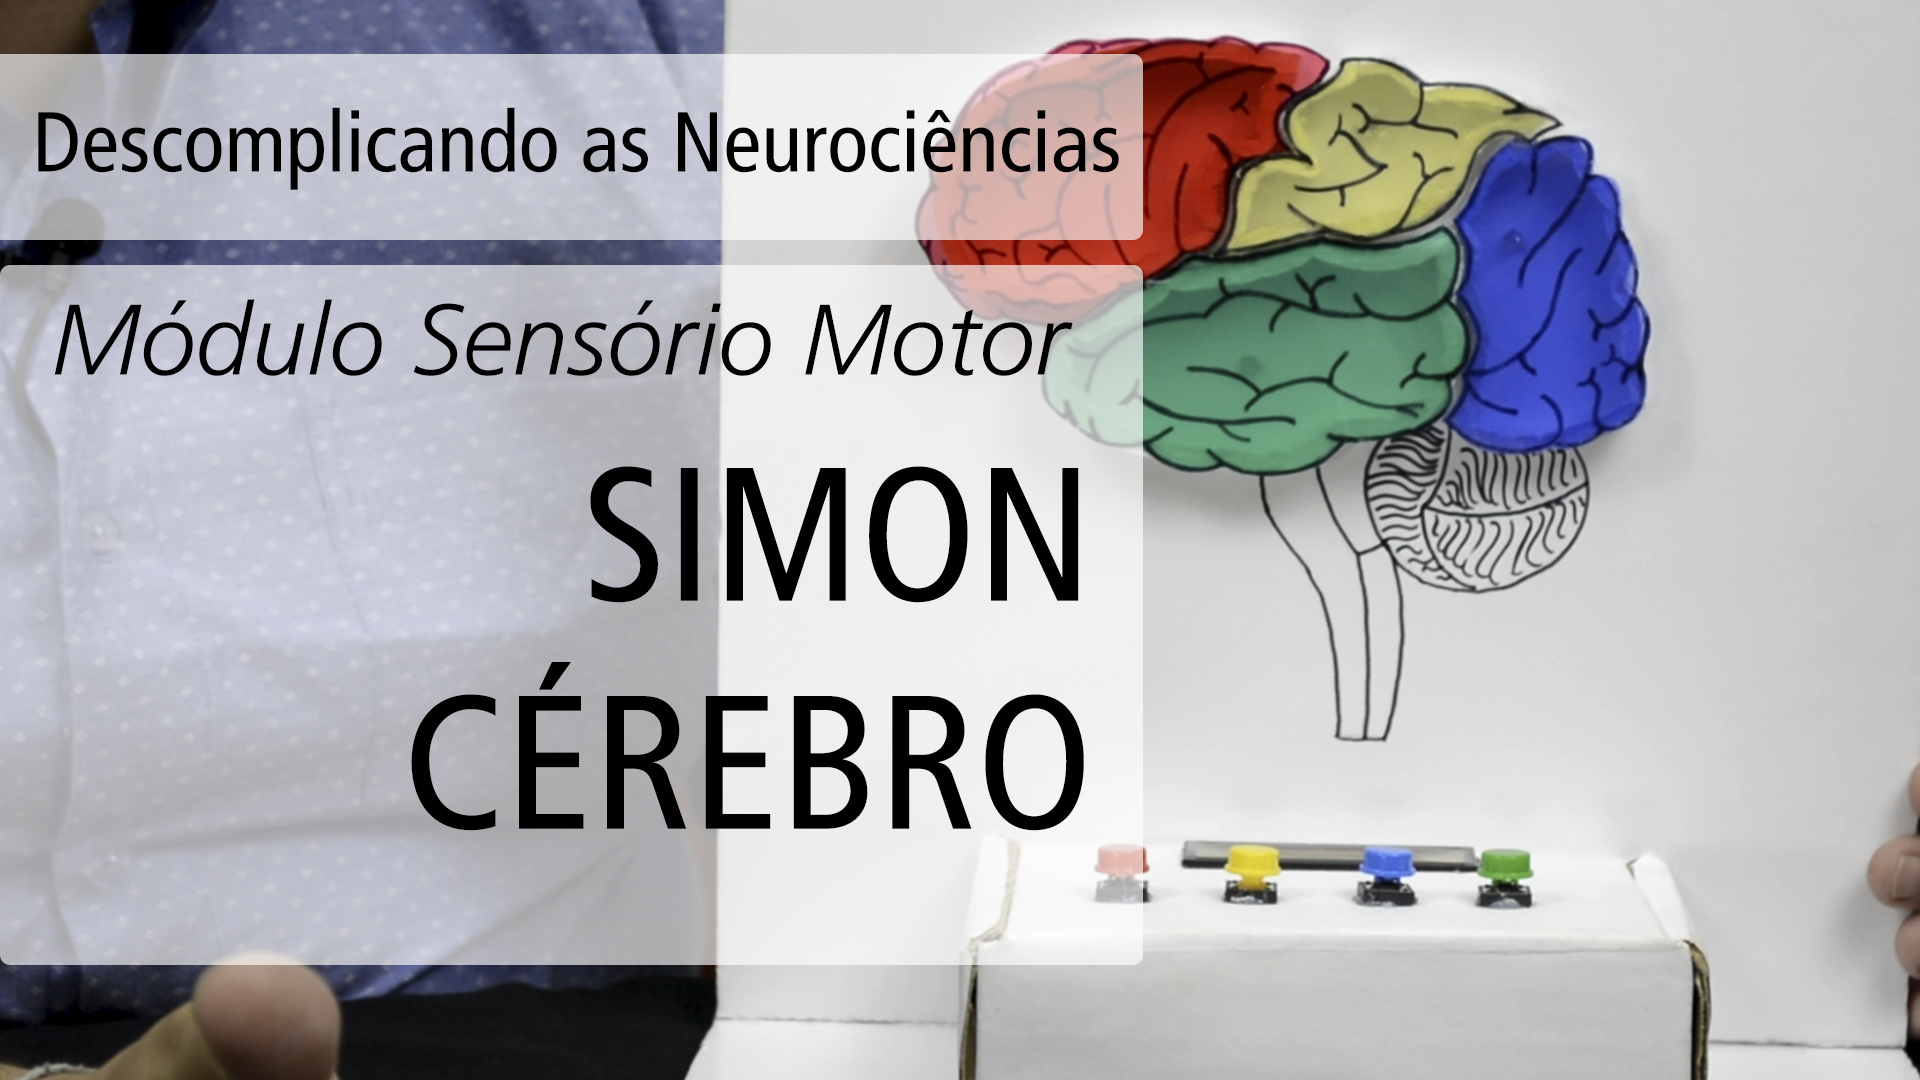 Simon Cérebro | Descomplicando as Neurociências